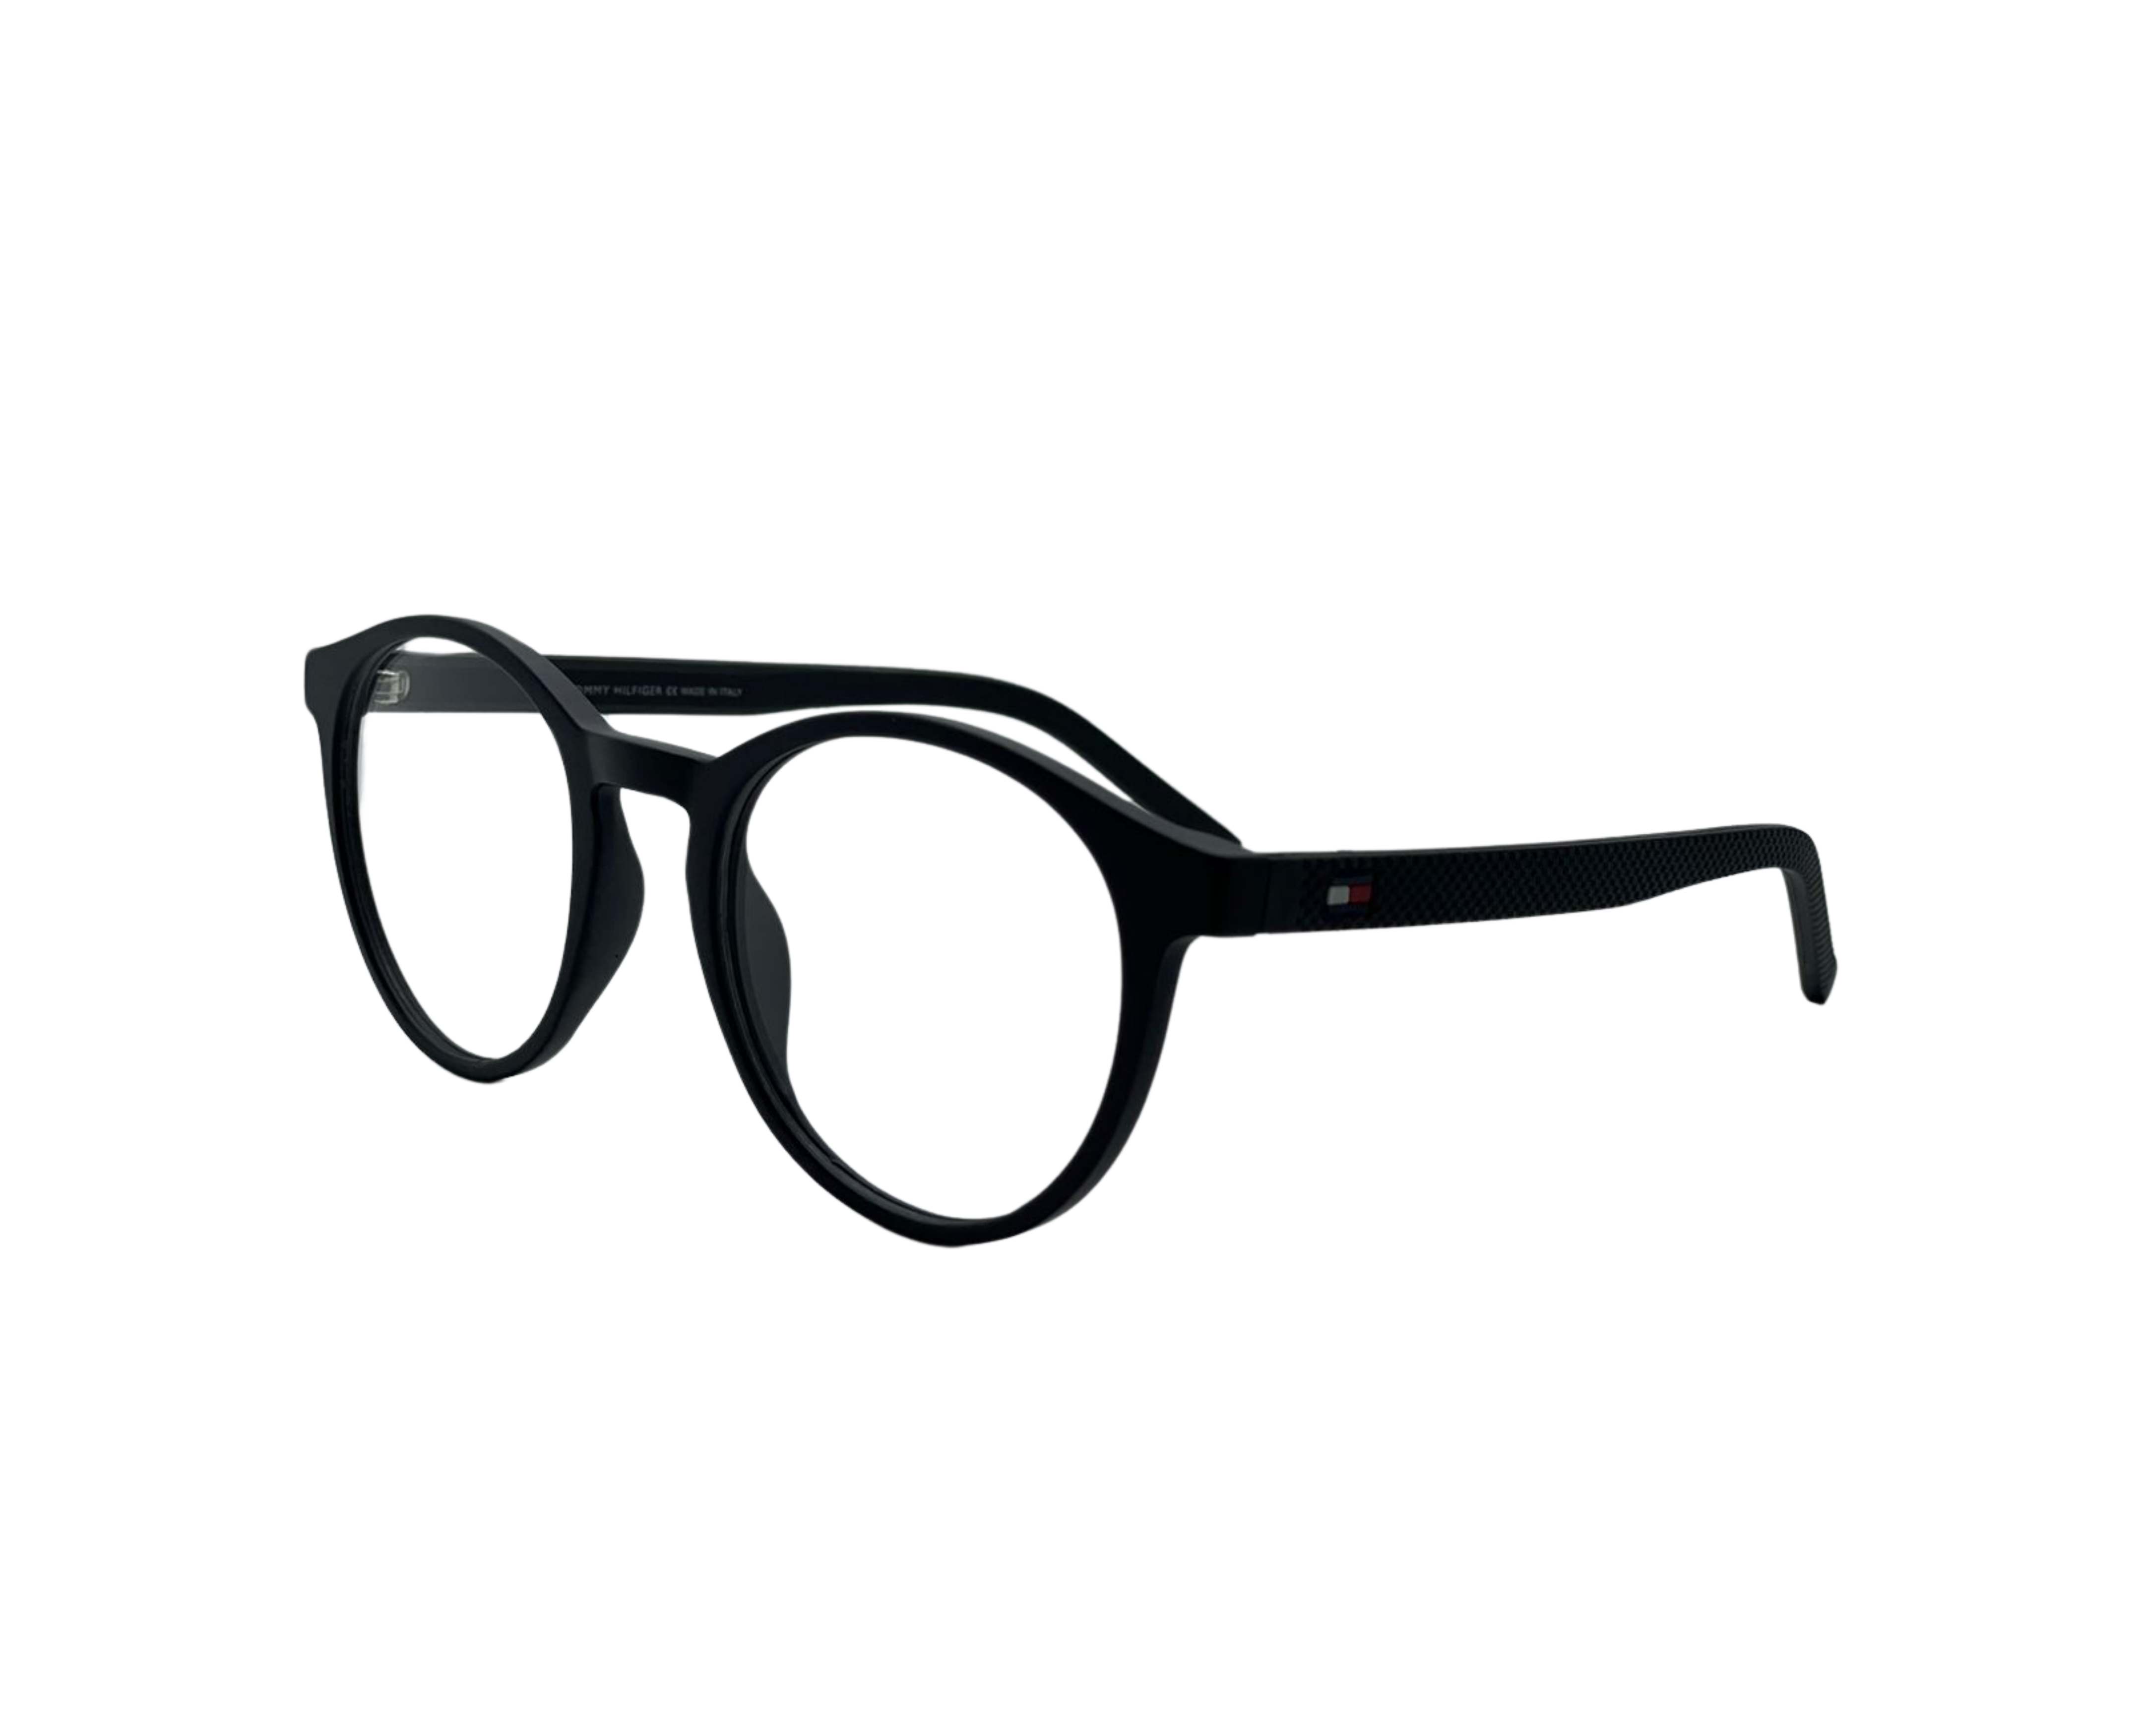 NS Luxury - 1787 - Black - Eyeglasses